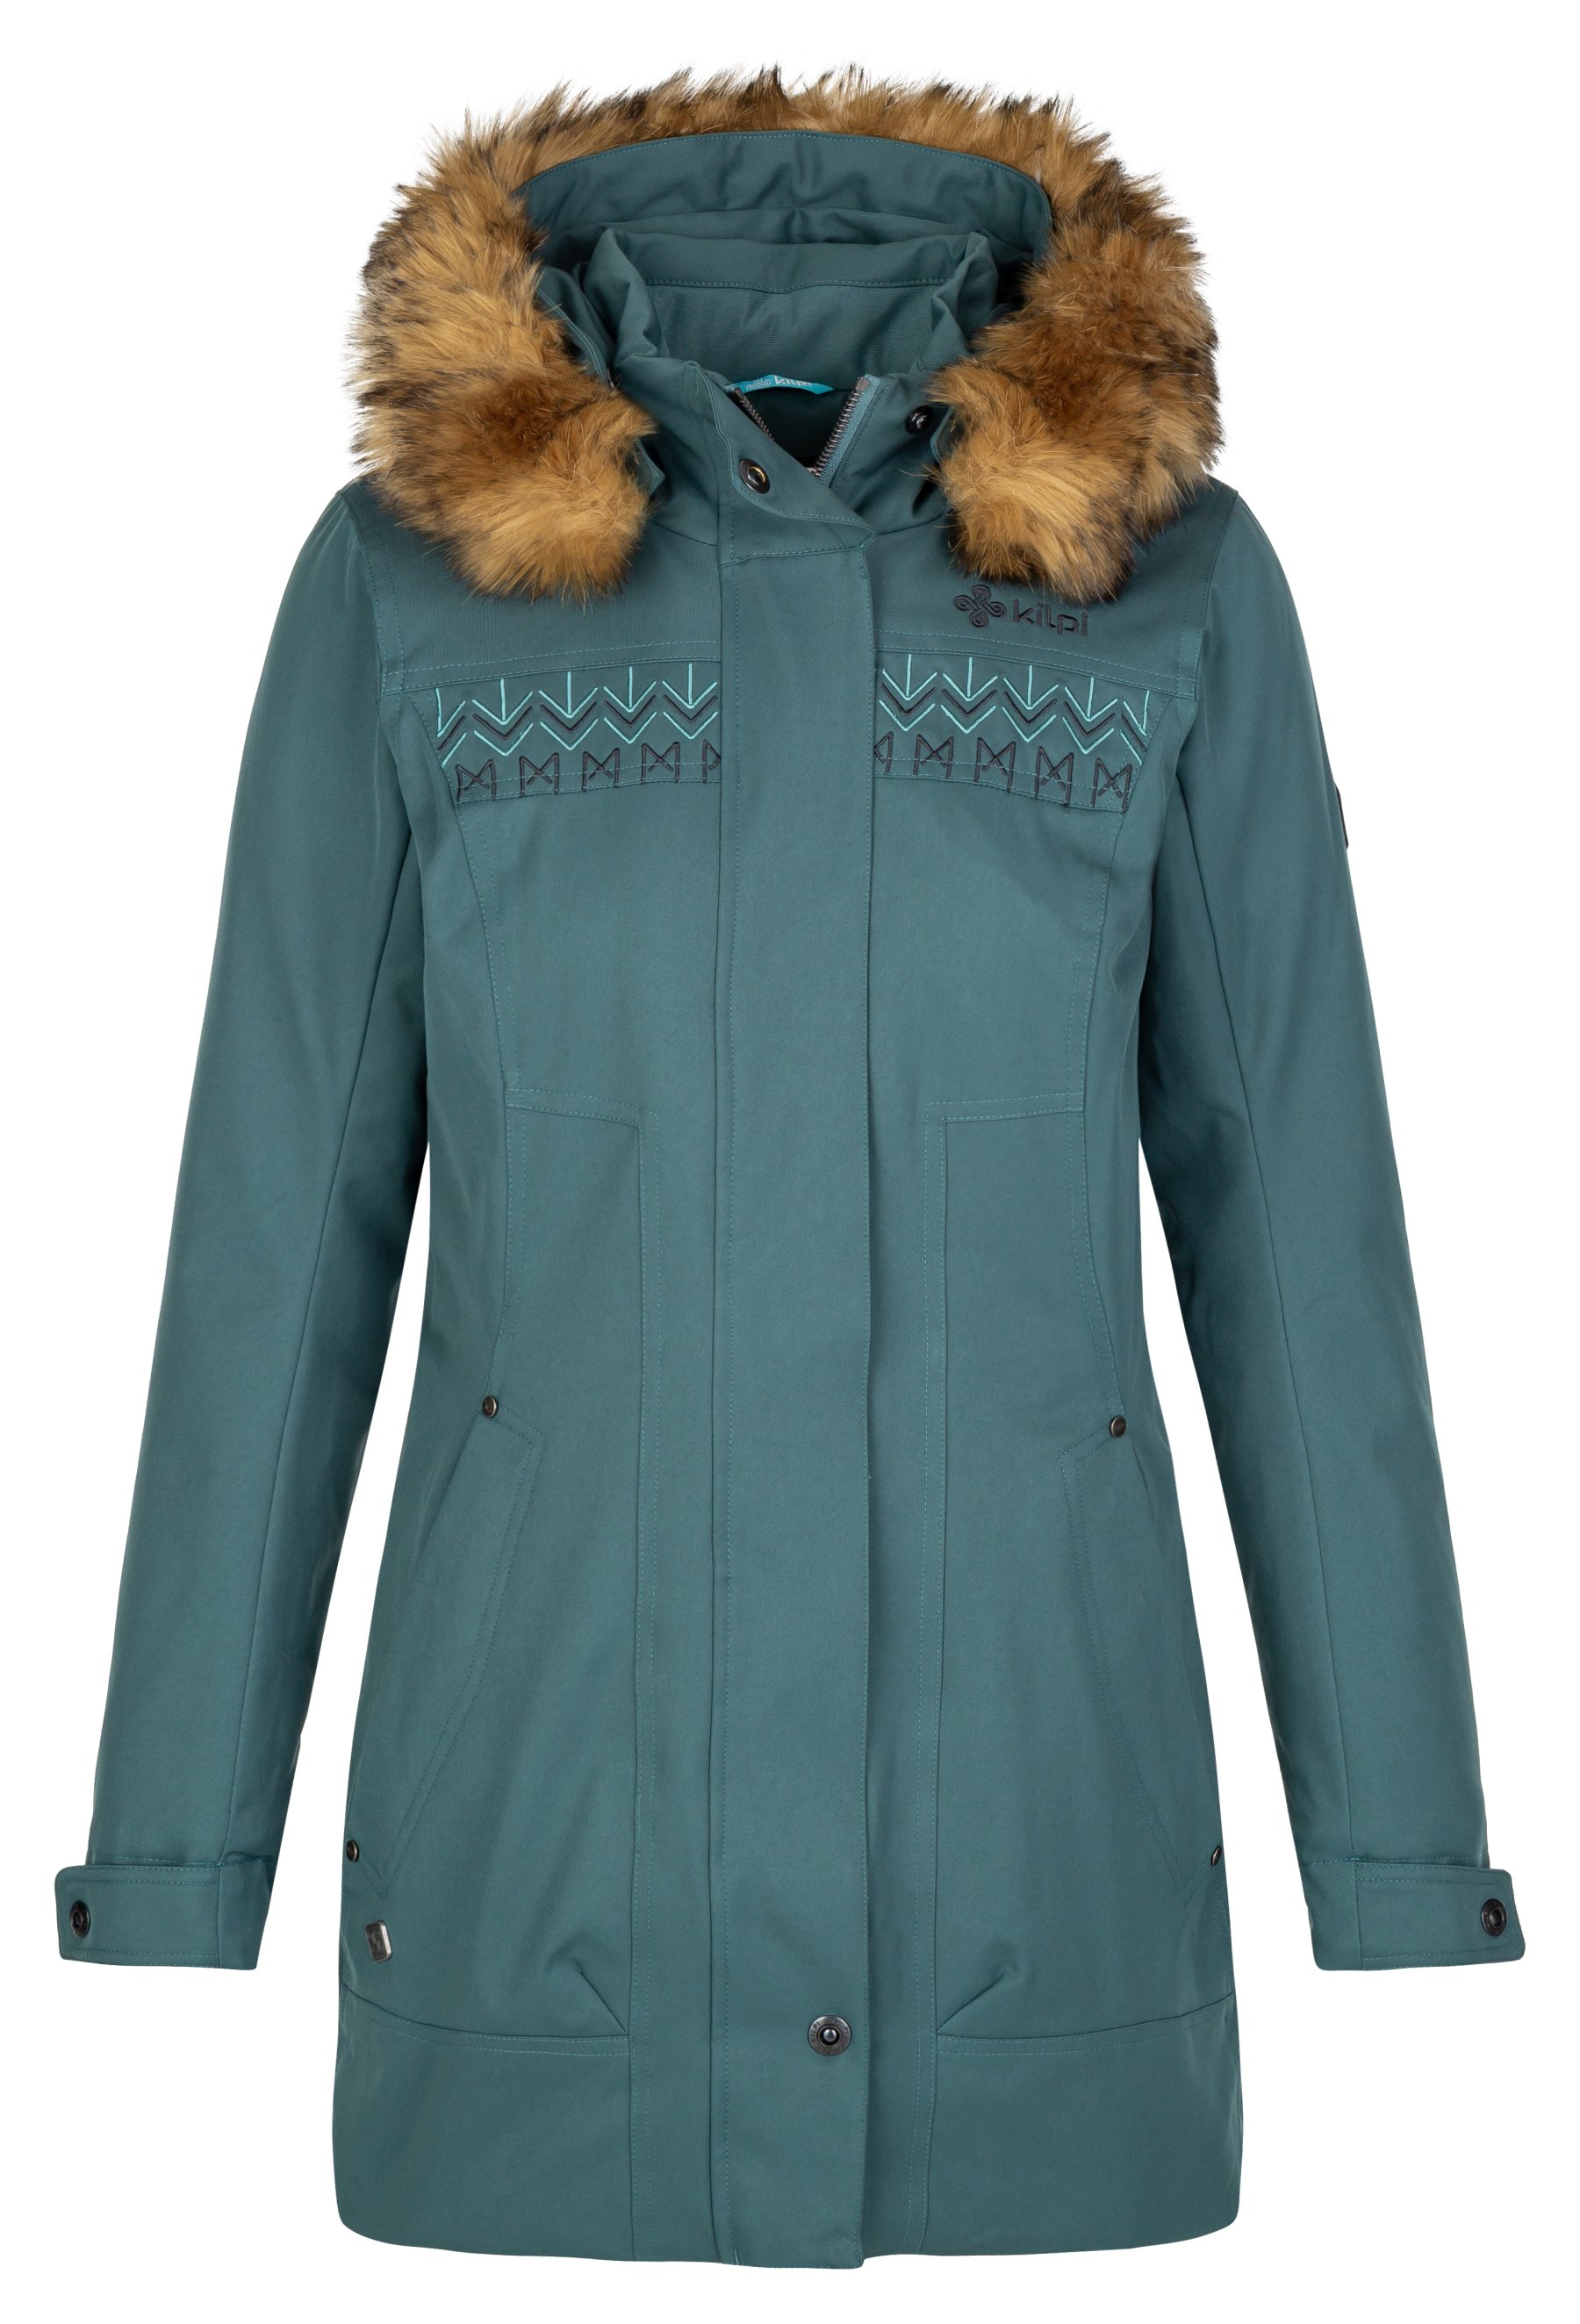 Kilpi dámský zimní kabát Peru-W Barva: tmavě zelená, Velikost: 44